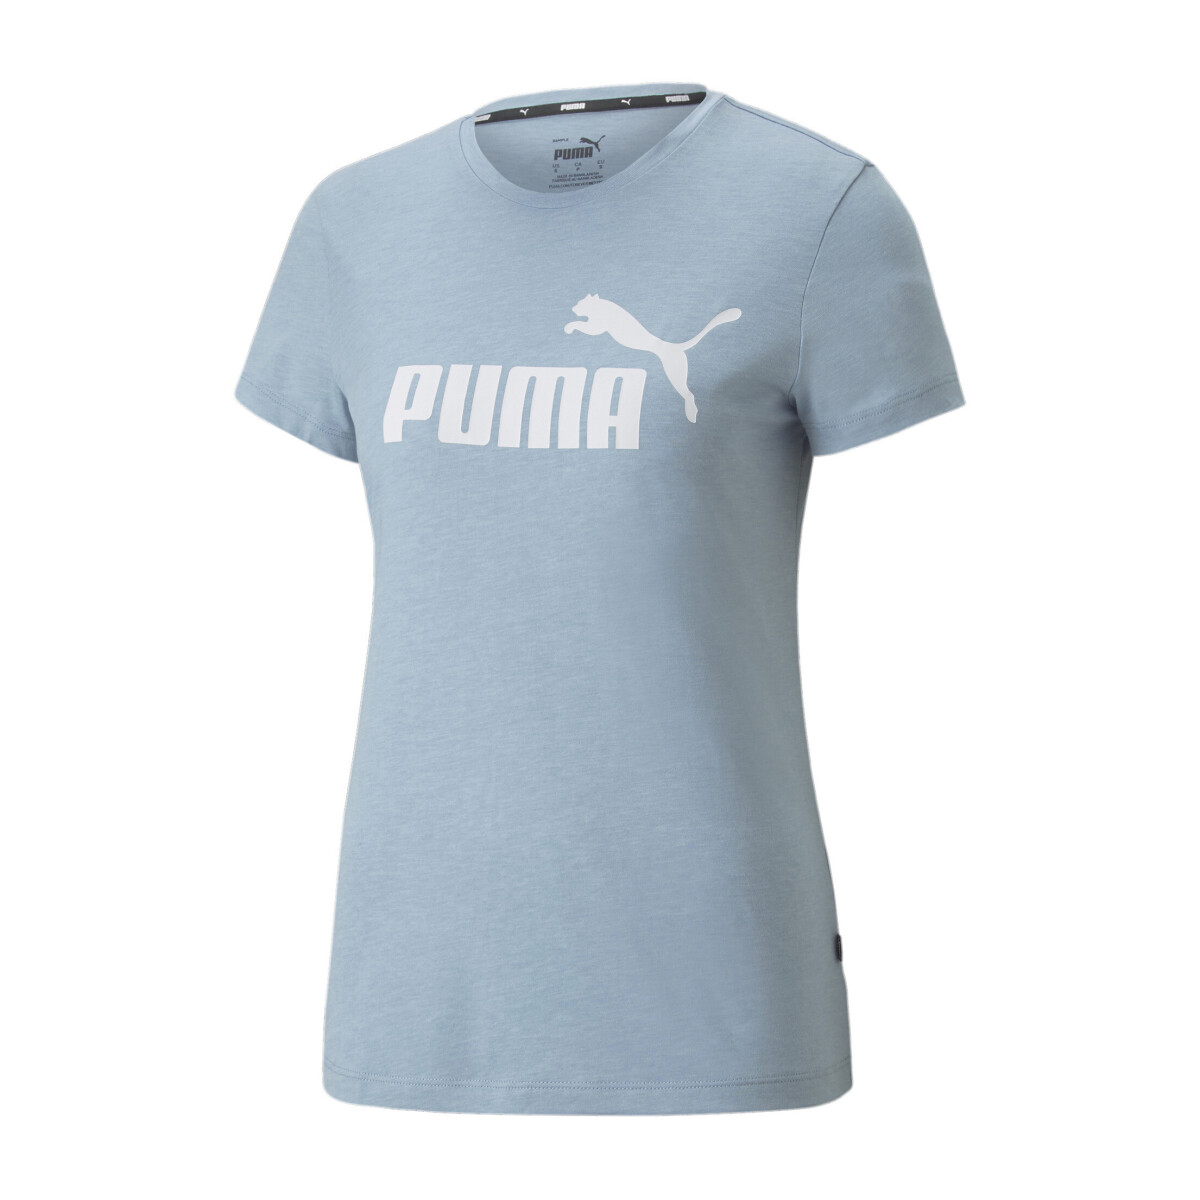 Remera Logo Wns Puma - Azul/Piedra 